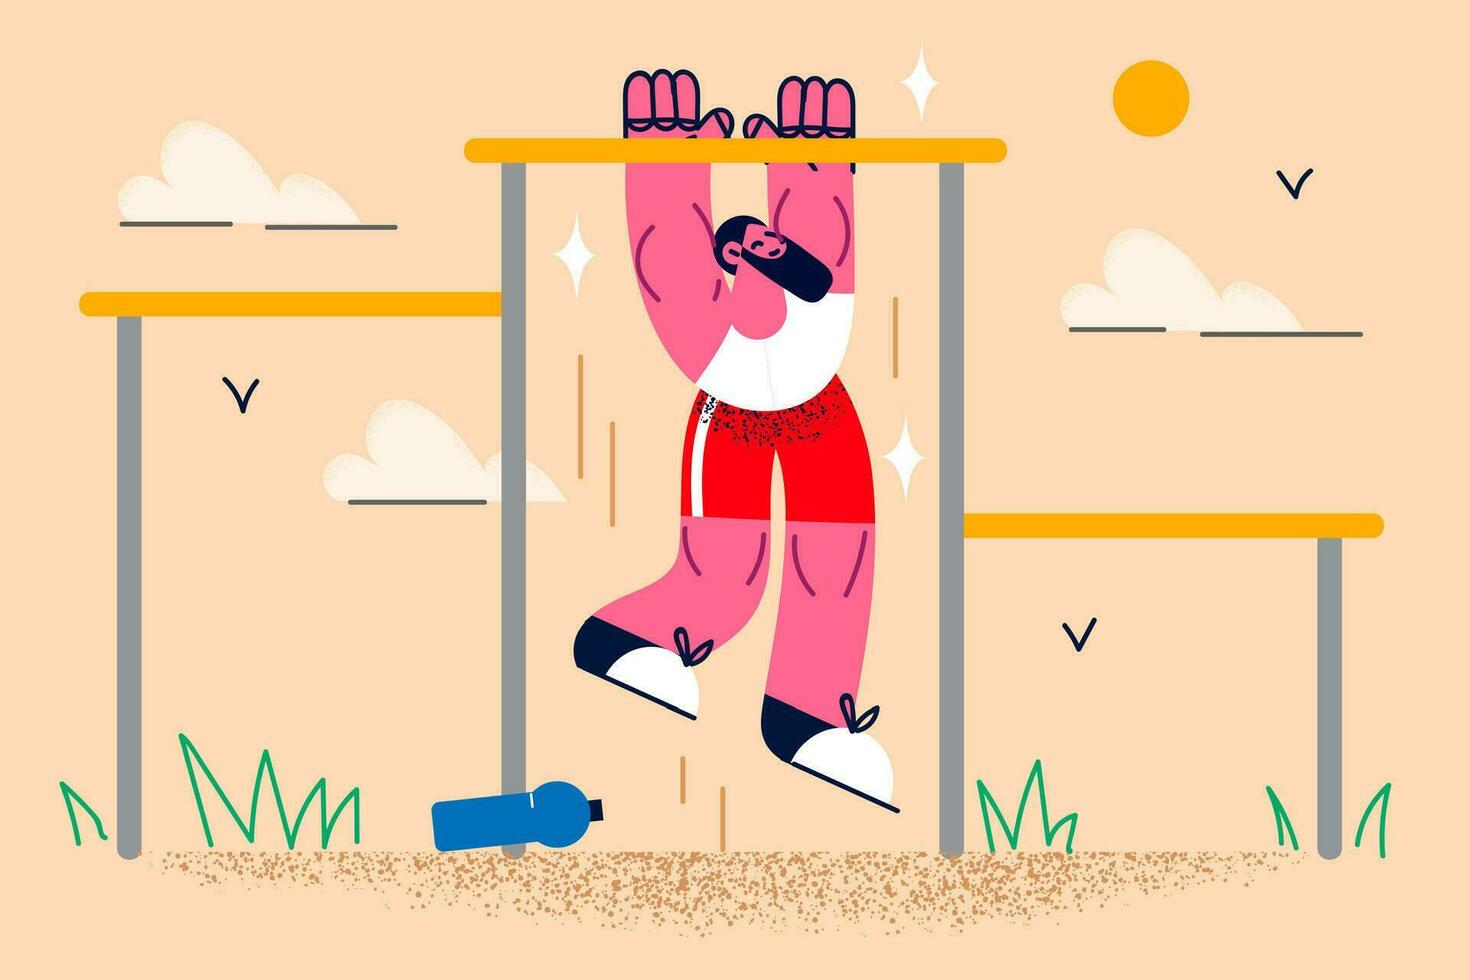 tonad passa sportsman göra pull-ups på bar utomhus. aktiva man do sporter tåg övning på upp med hakan burs. fysisk aktivitet och friska livsstil. morgon- träna begrepp. vektor illustration.